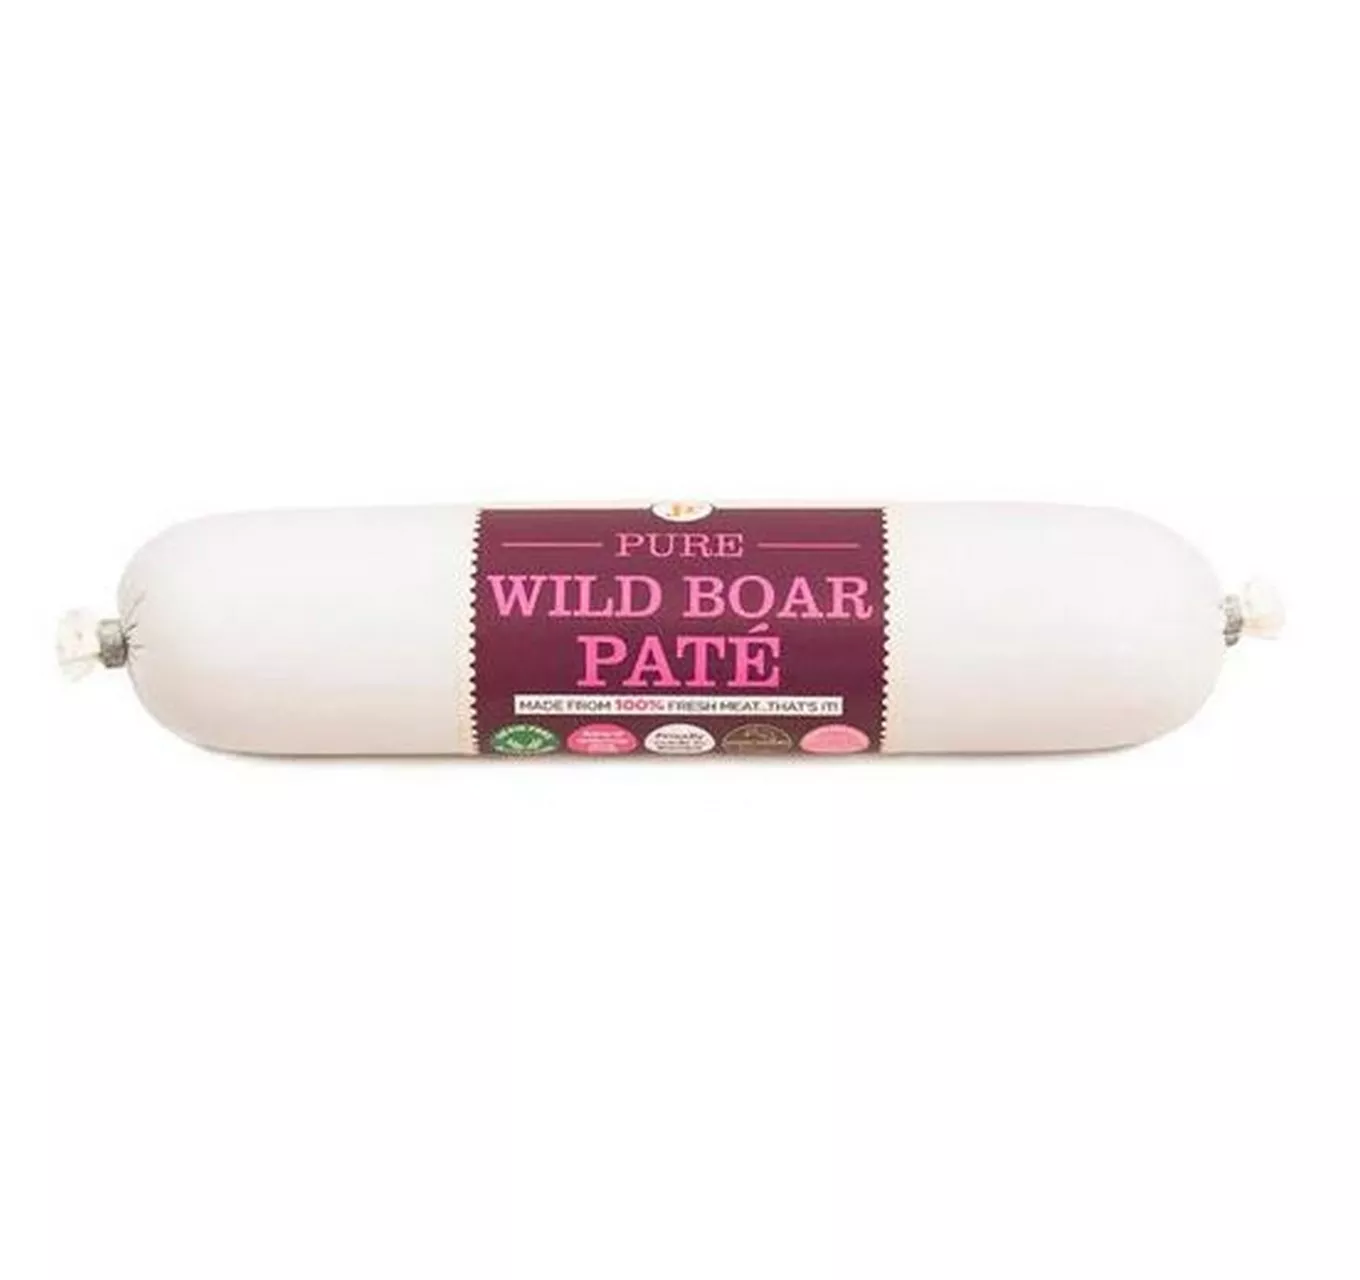 Pure Wild Boar Pate 200g